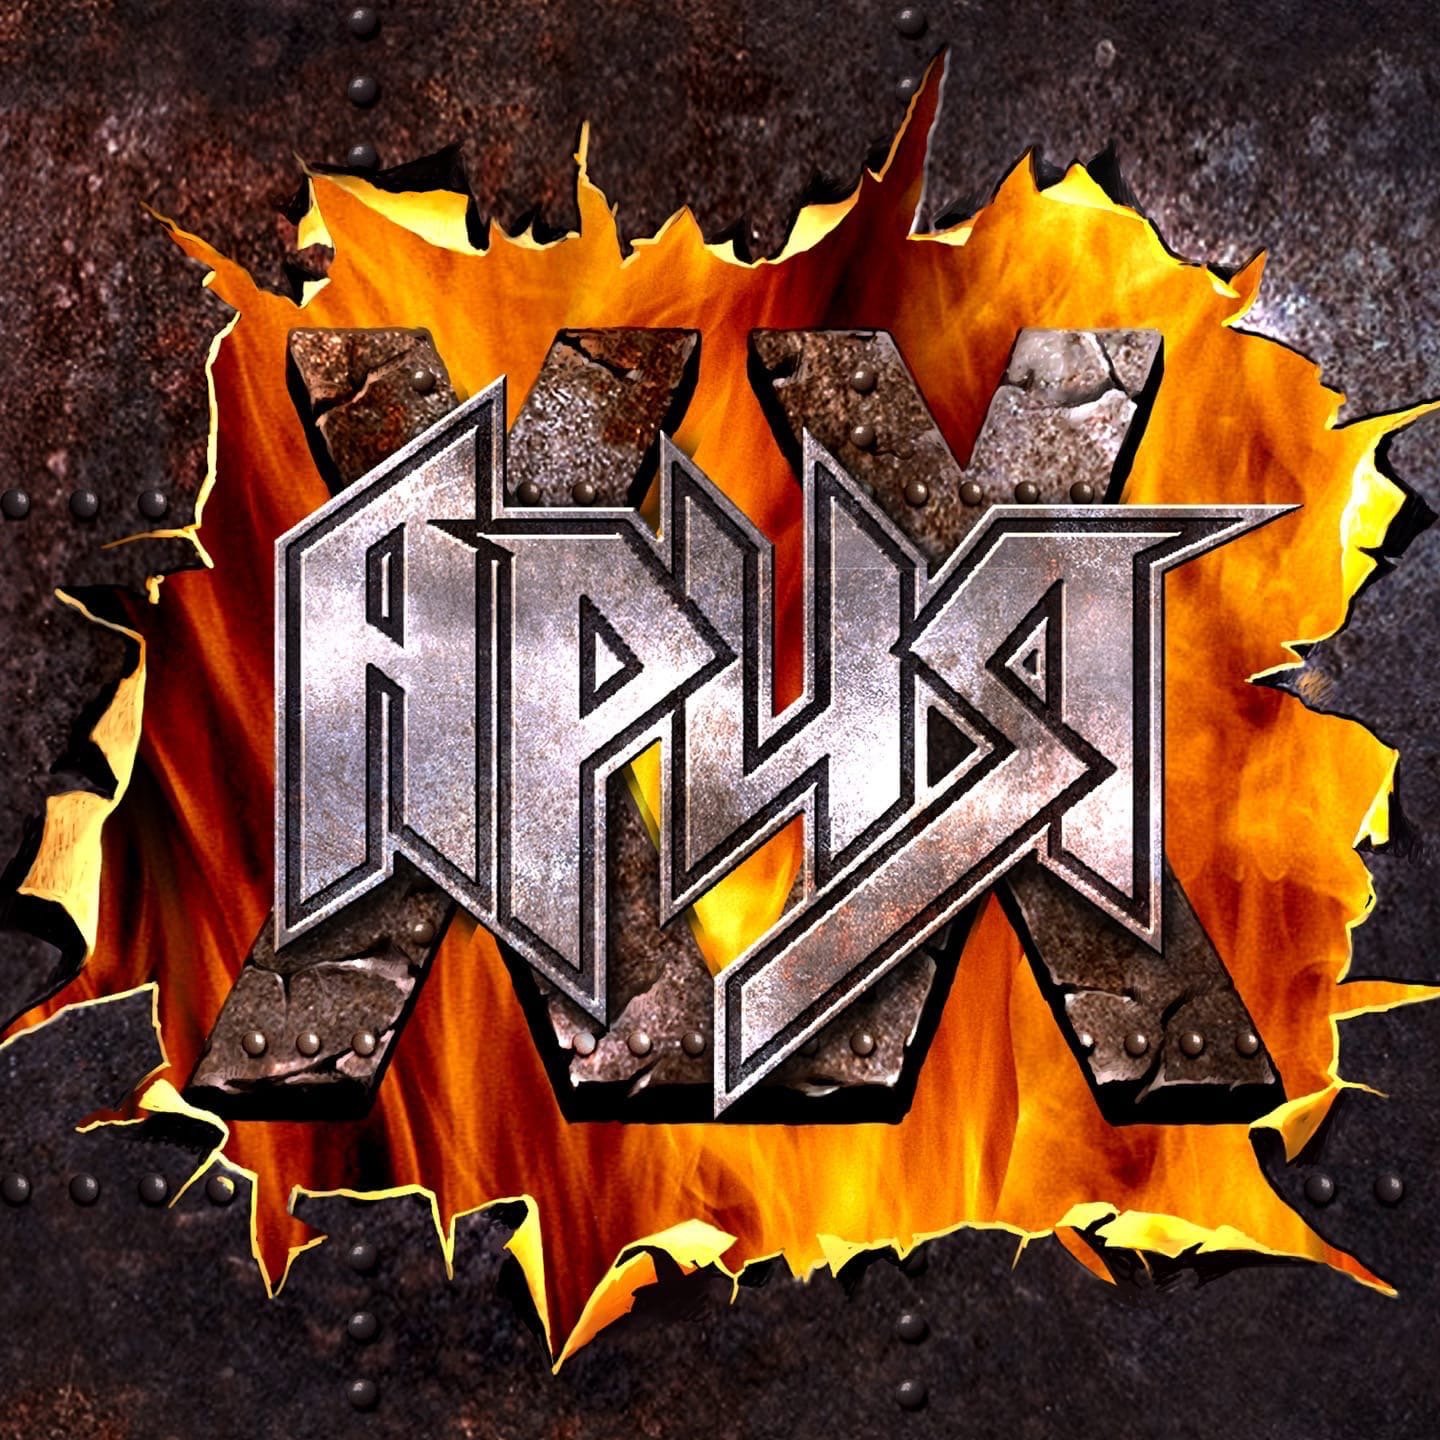 Ария вк. Ария группа 2021. Ария XX лет 2021. Ария - XX лет (Live) - 2021. Логотип рок группы Ария.